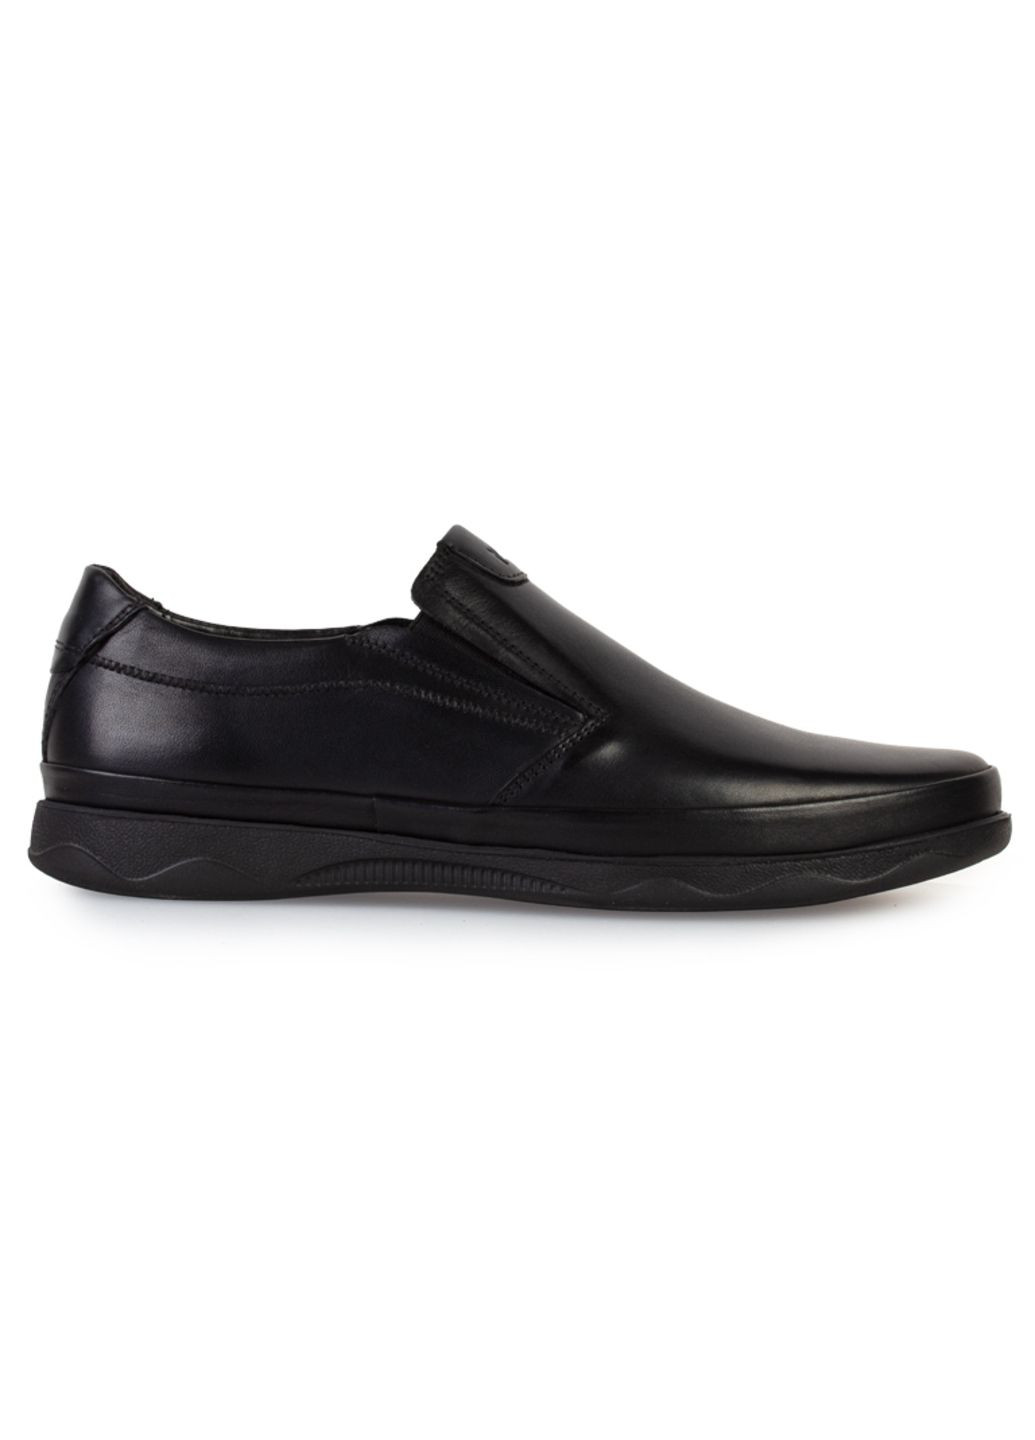 Черные повседневные туфли мужские бренда 9200486_(1) ModaMilano без шнурков